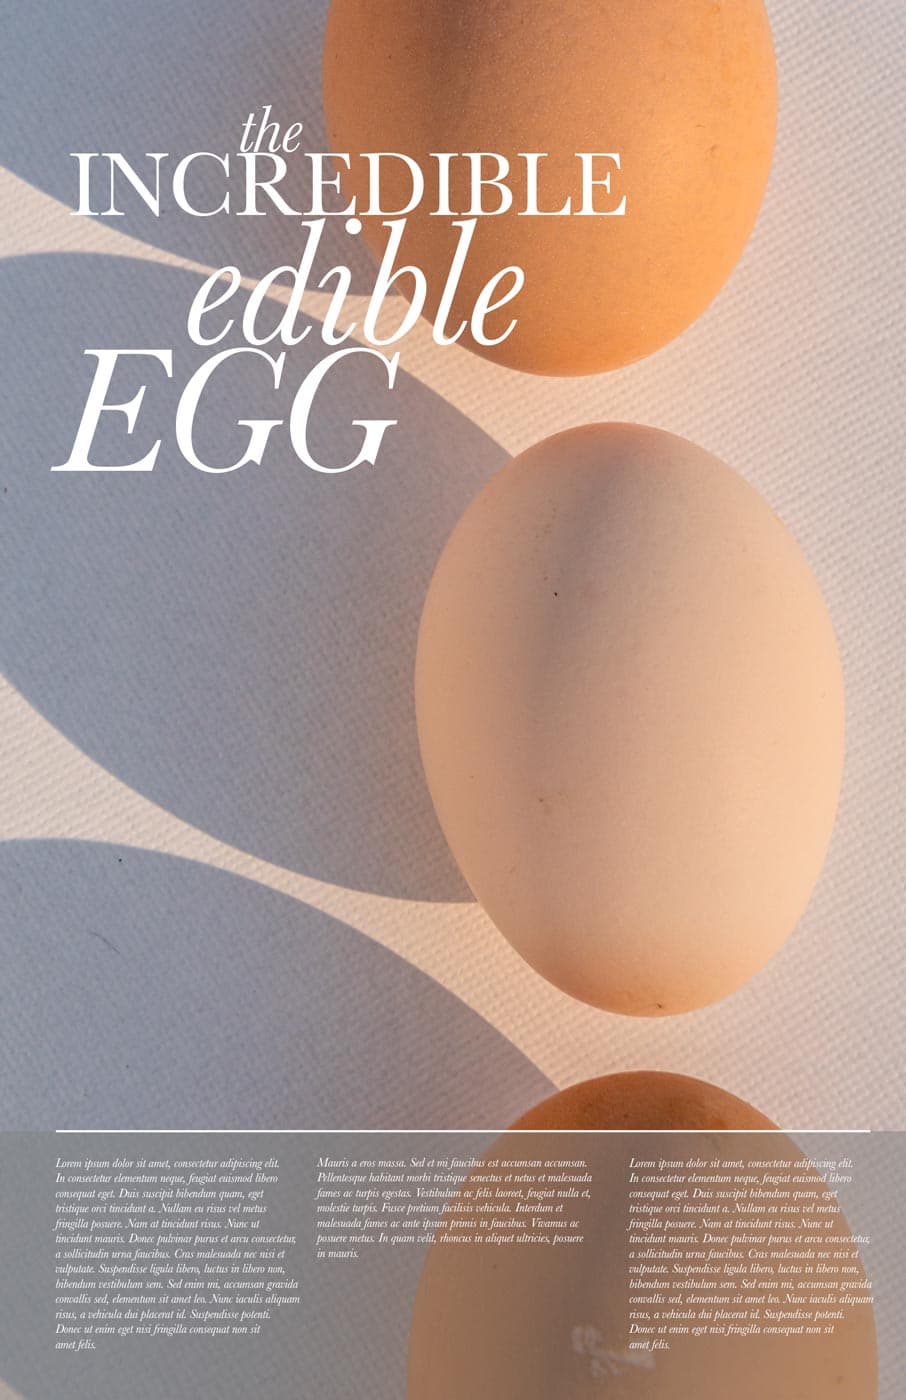 The Incredible Edible Egg design concept